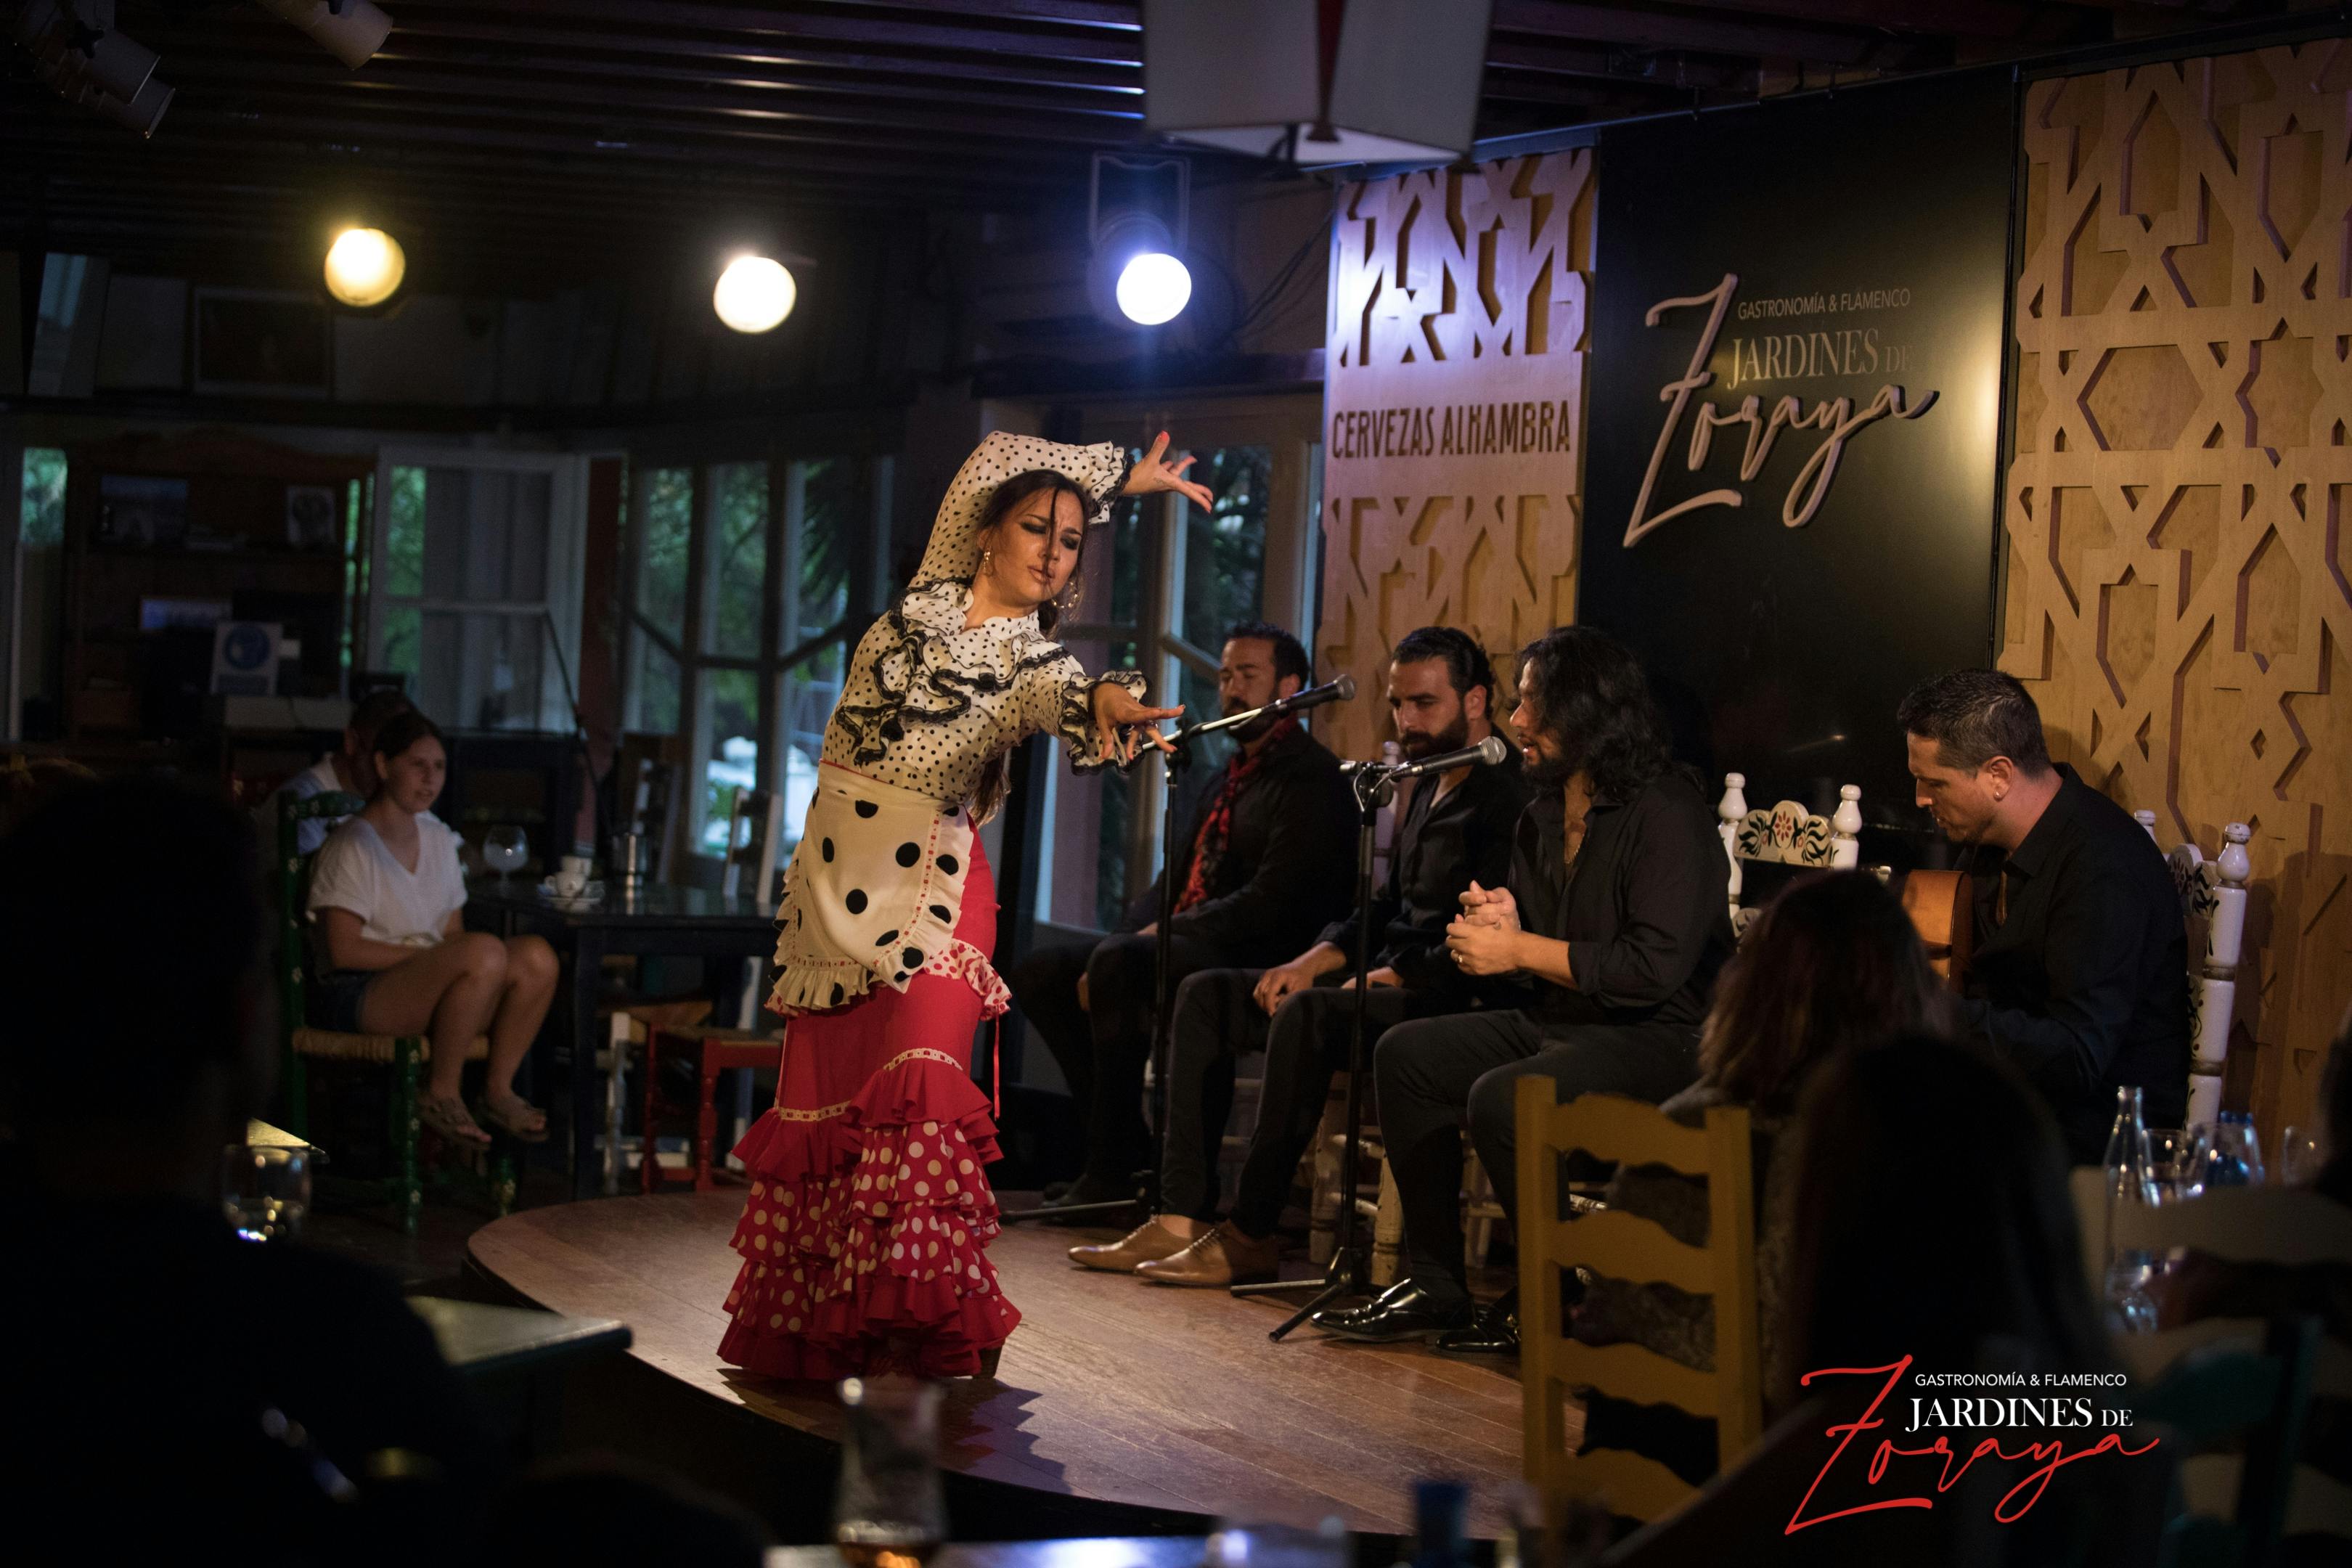 Ingressos para show de flamenco nos Jardines de Zoraya